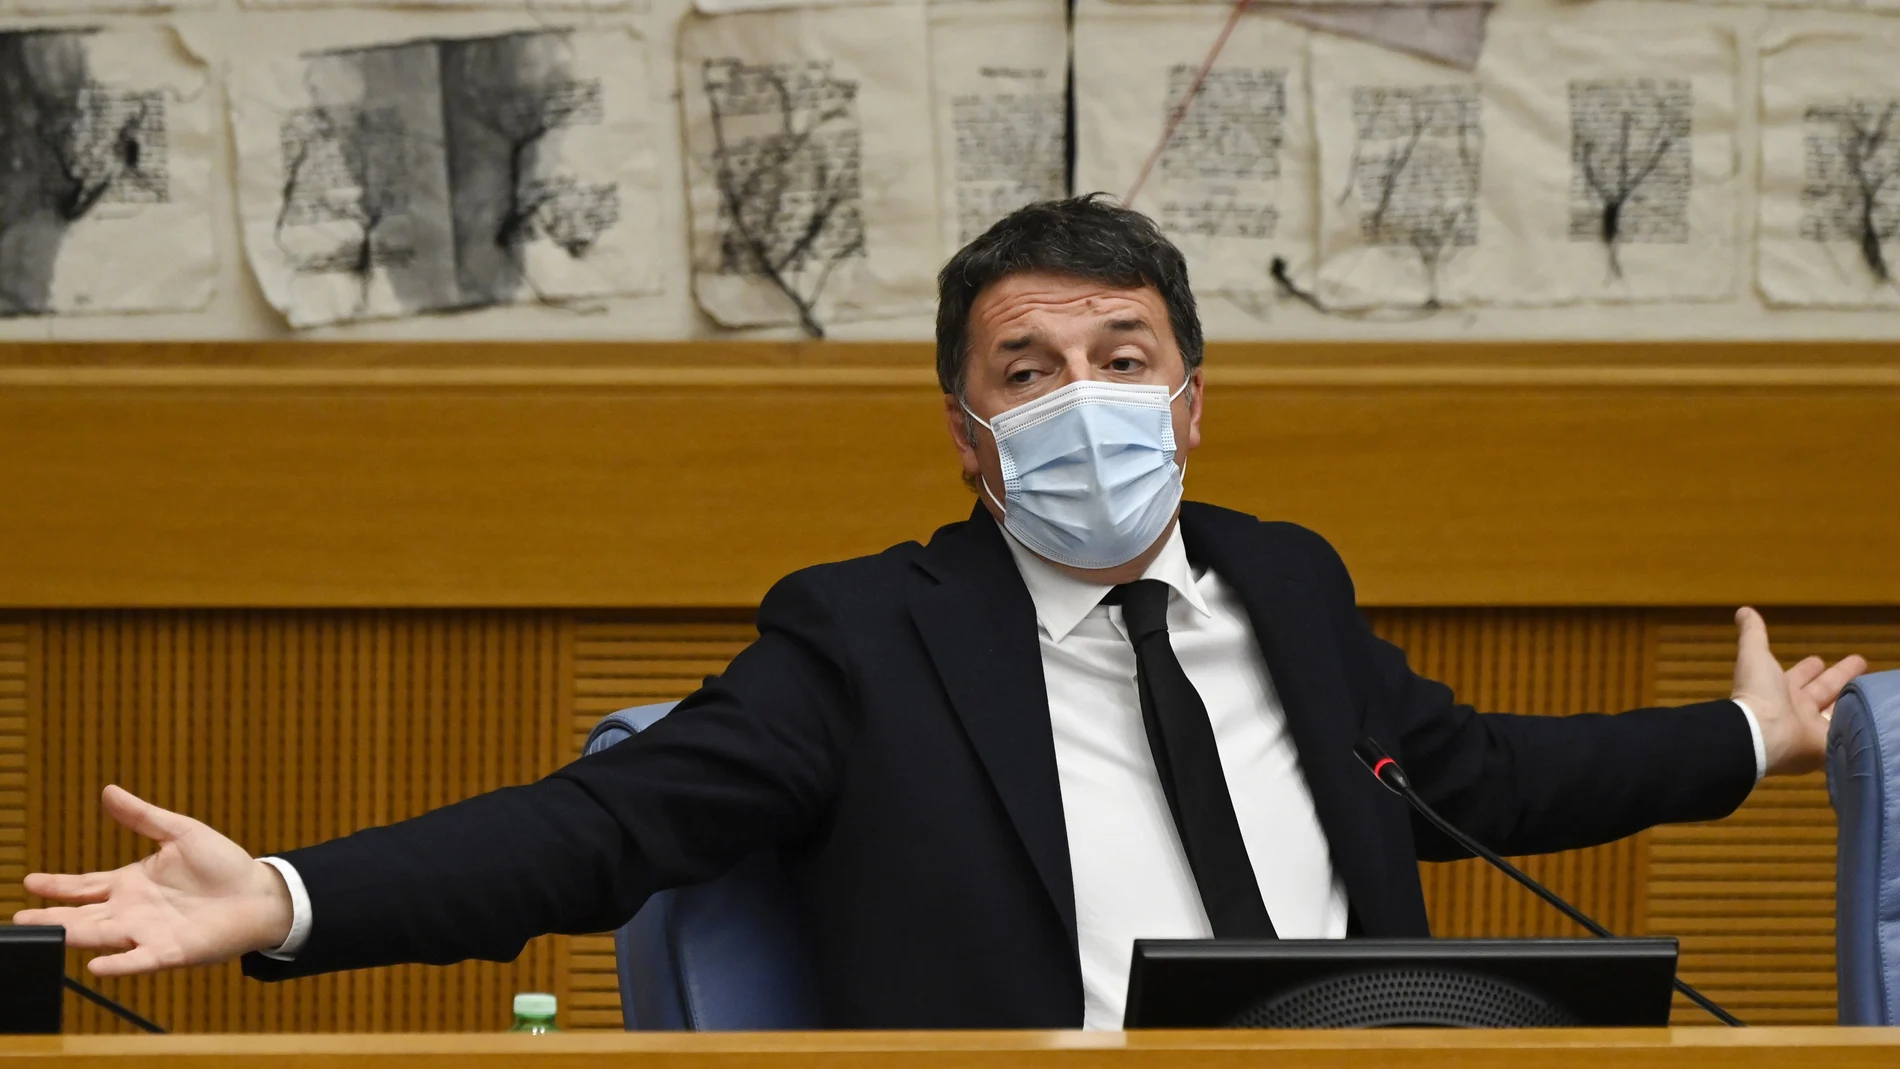 El ex primer ministro italiano Matteo Renzi se resiste a dejar el protagonismo político